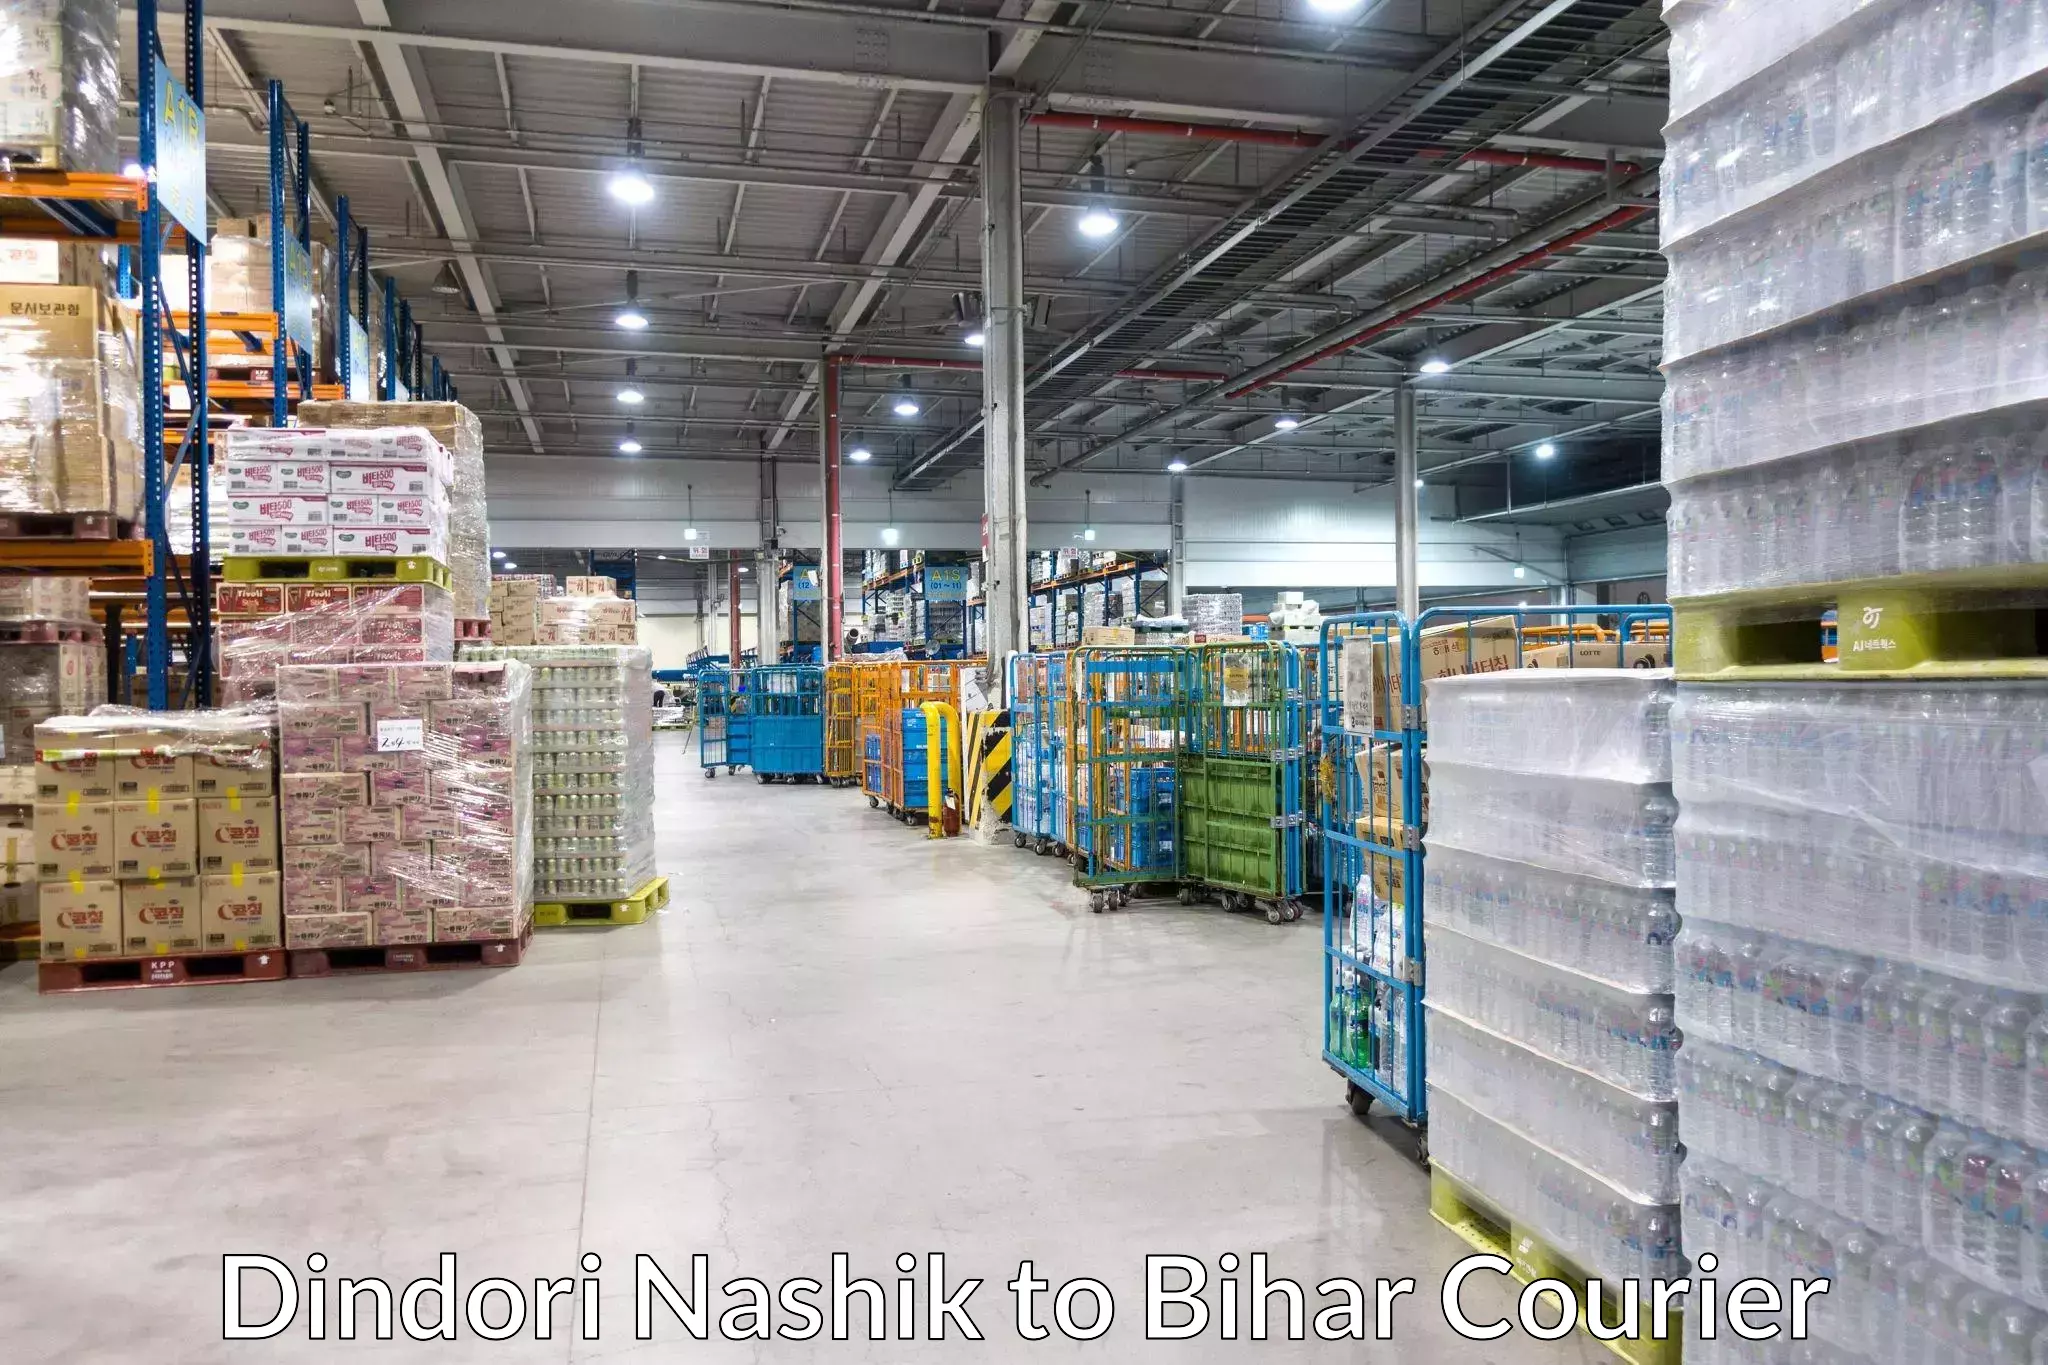 Quality courier services Dindori Nashik to Bihar